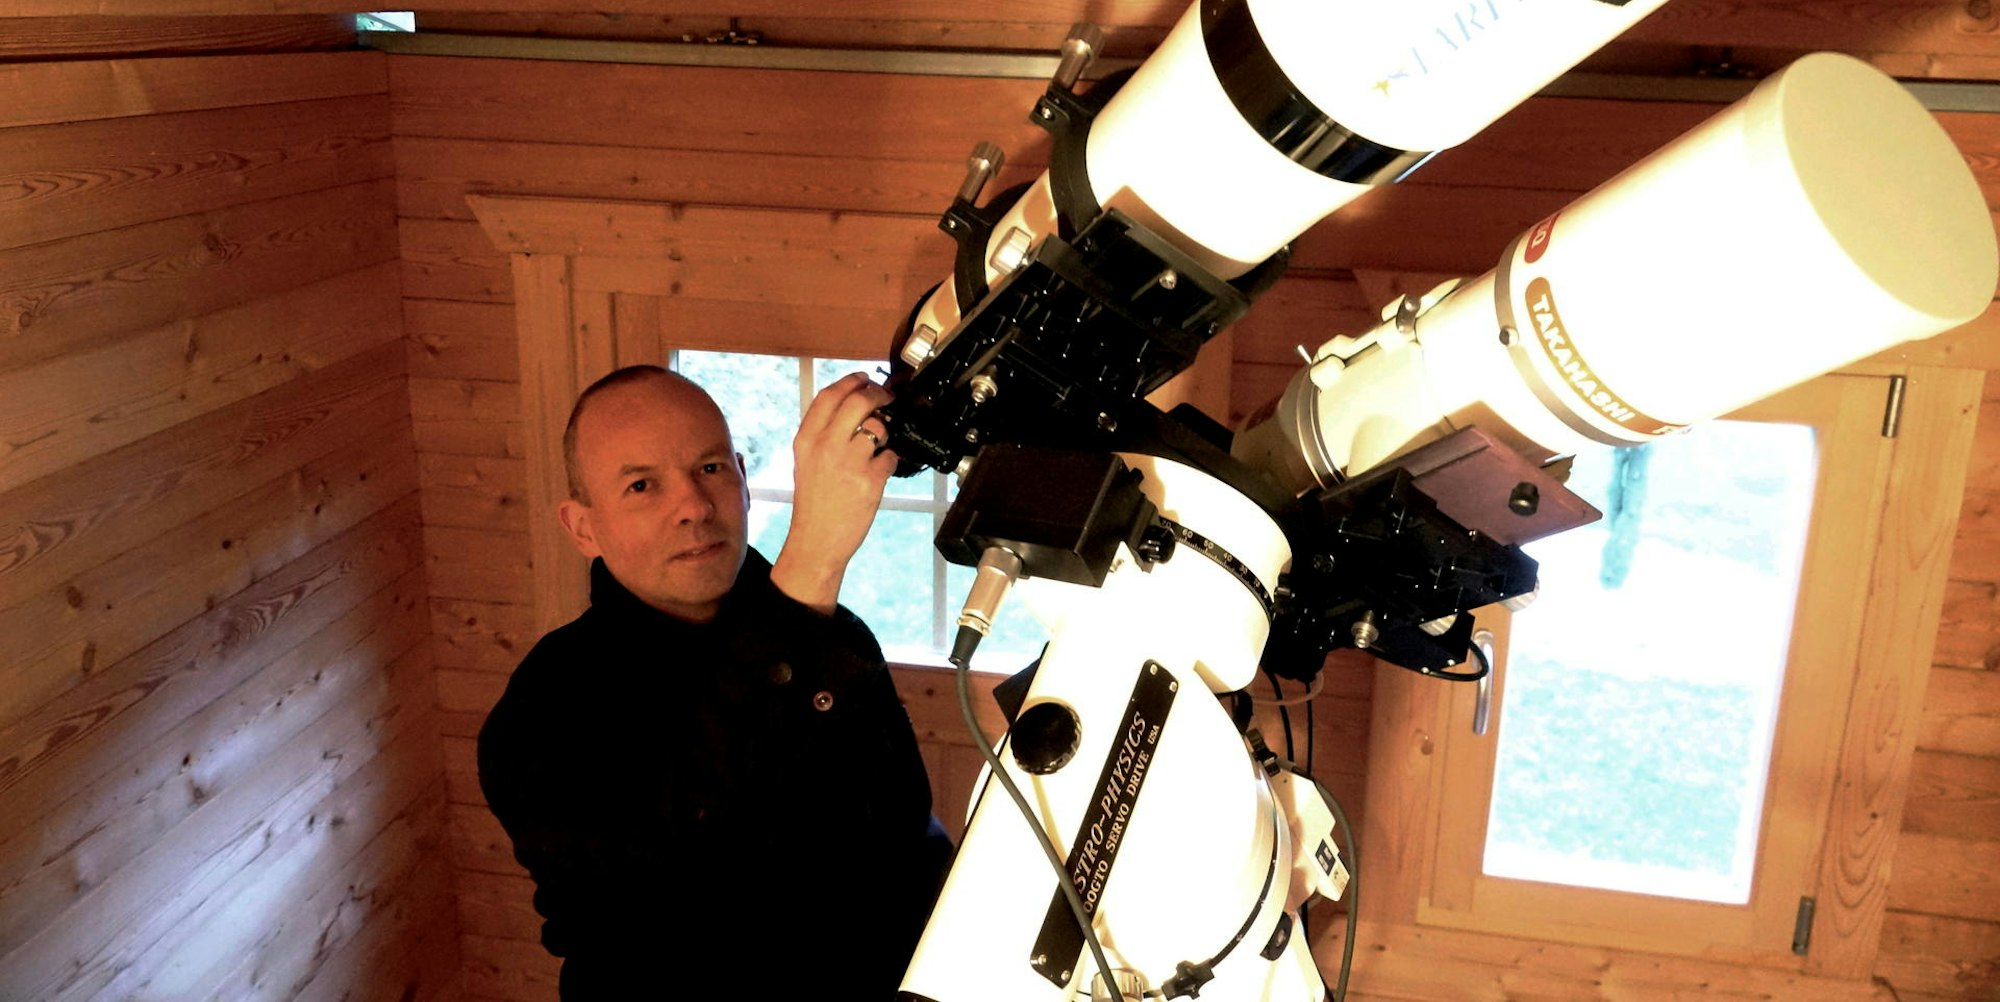 Wenn Jochen Schnichels das Rolldach seiner kleinen Sternwarte öffnet, macht er sich in klaren Nächten mit seinen beiden leistungsstarken Linsenteleskopen auf Fotojagd am Sternenhimmel – am liebsten bei kalten Temperaturen.